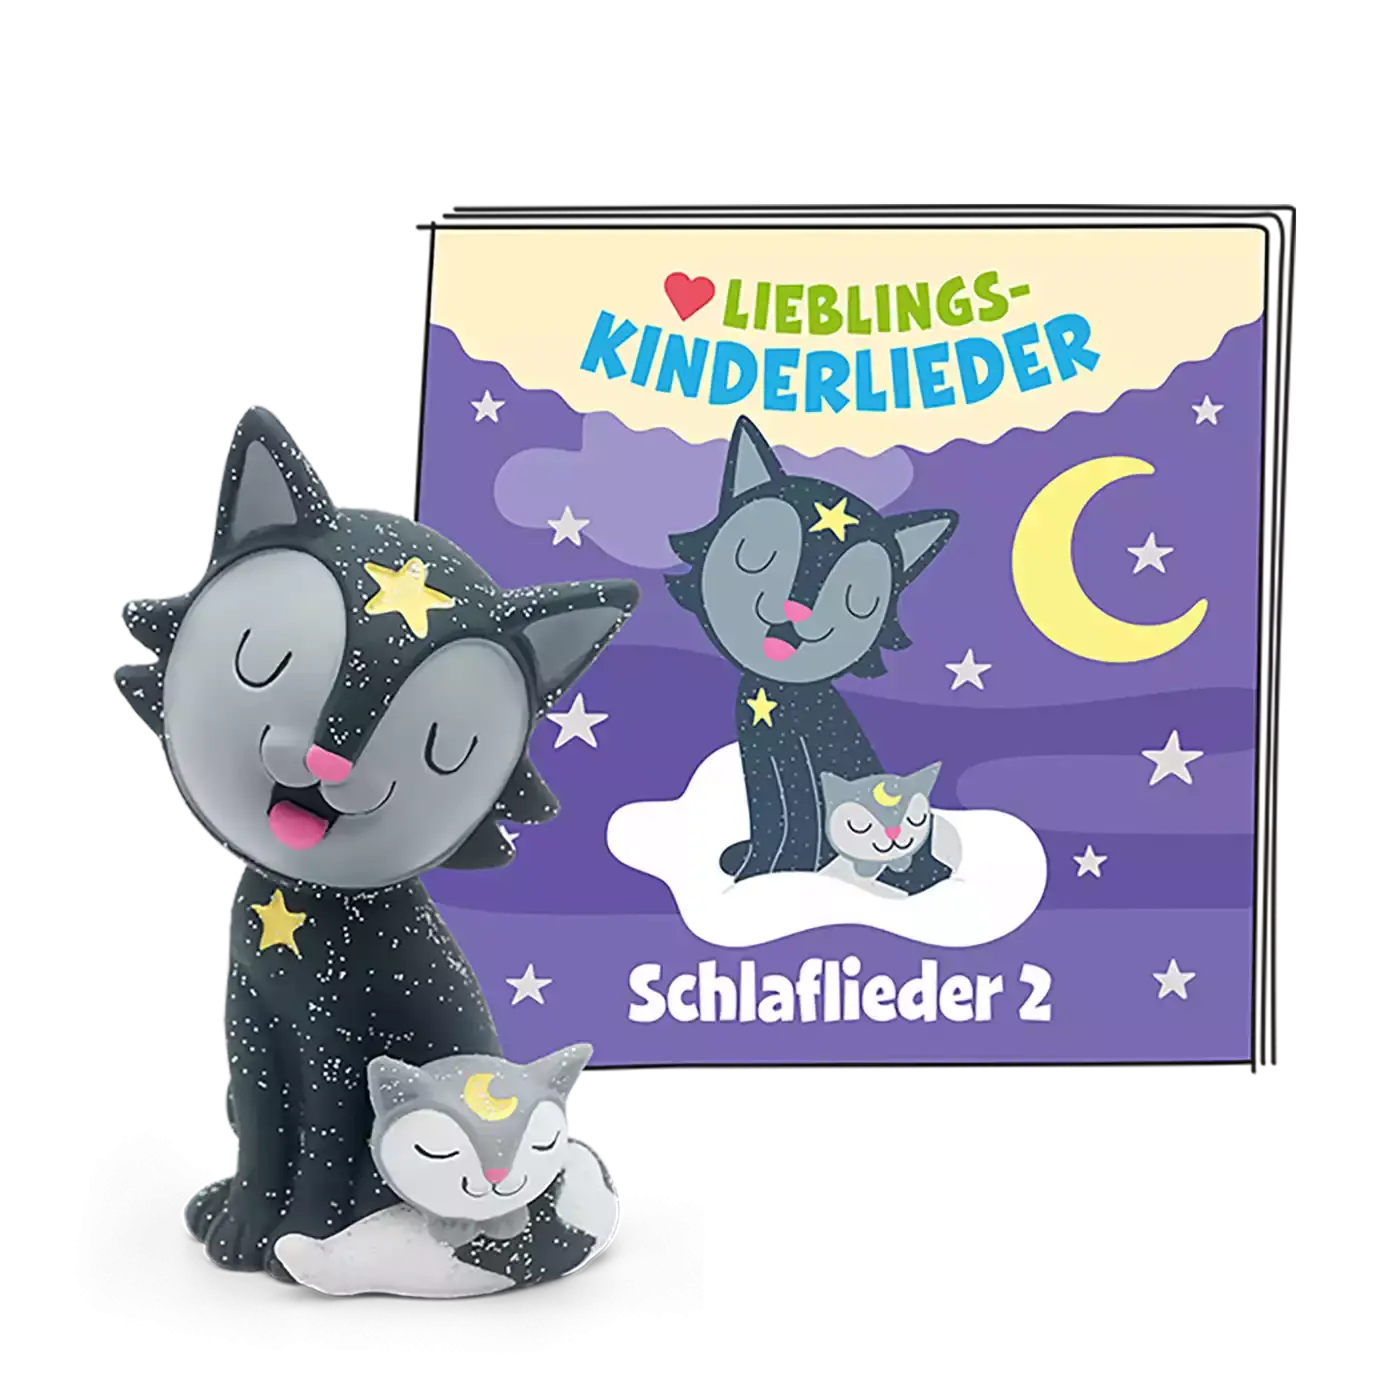 Lieblings-Kinderlieder - Schlaflieder 2 tonies 2000581999104 3